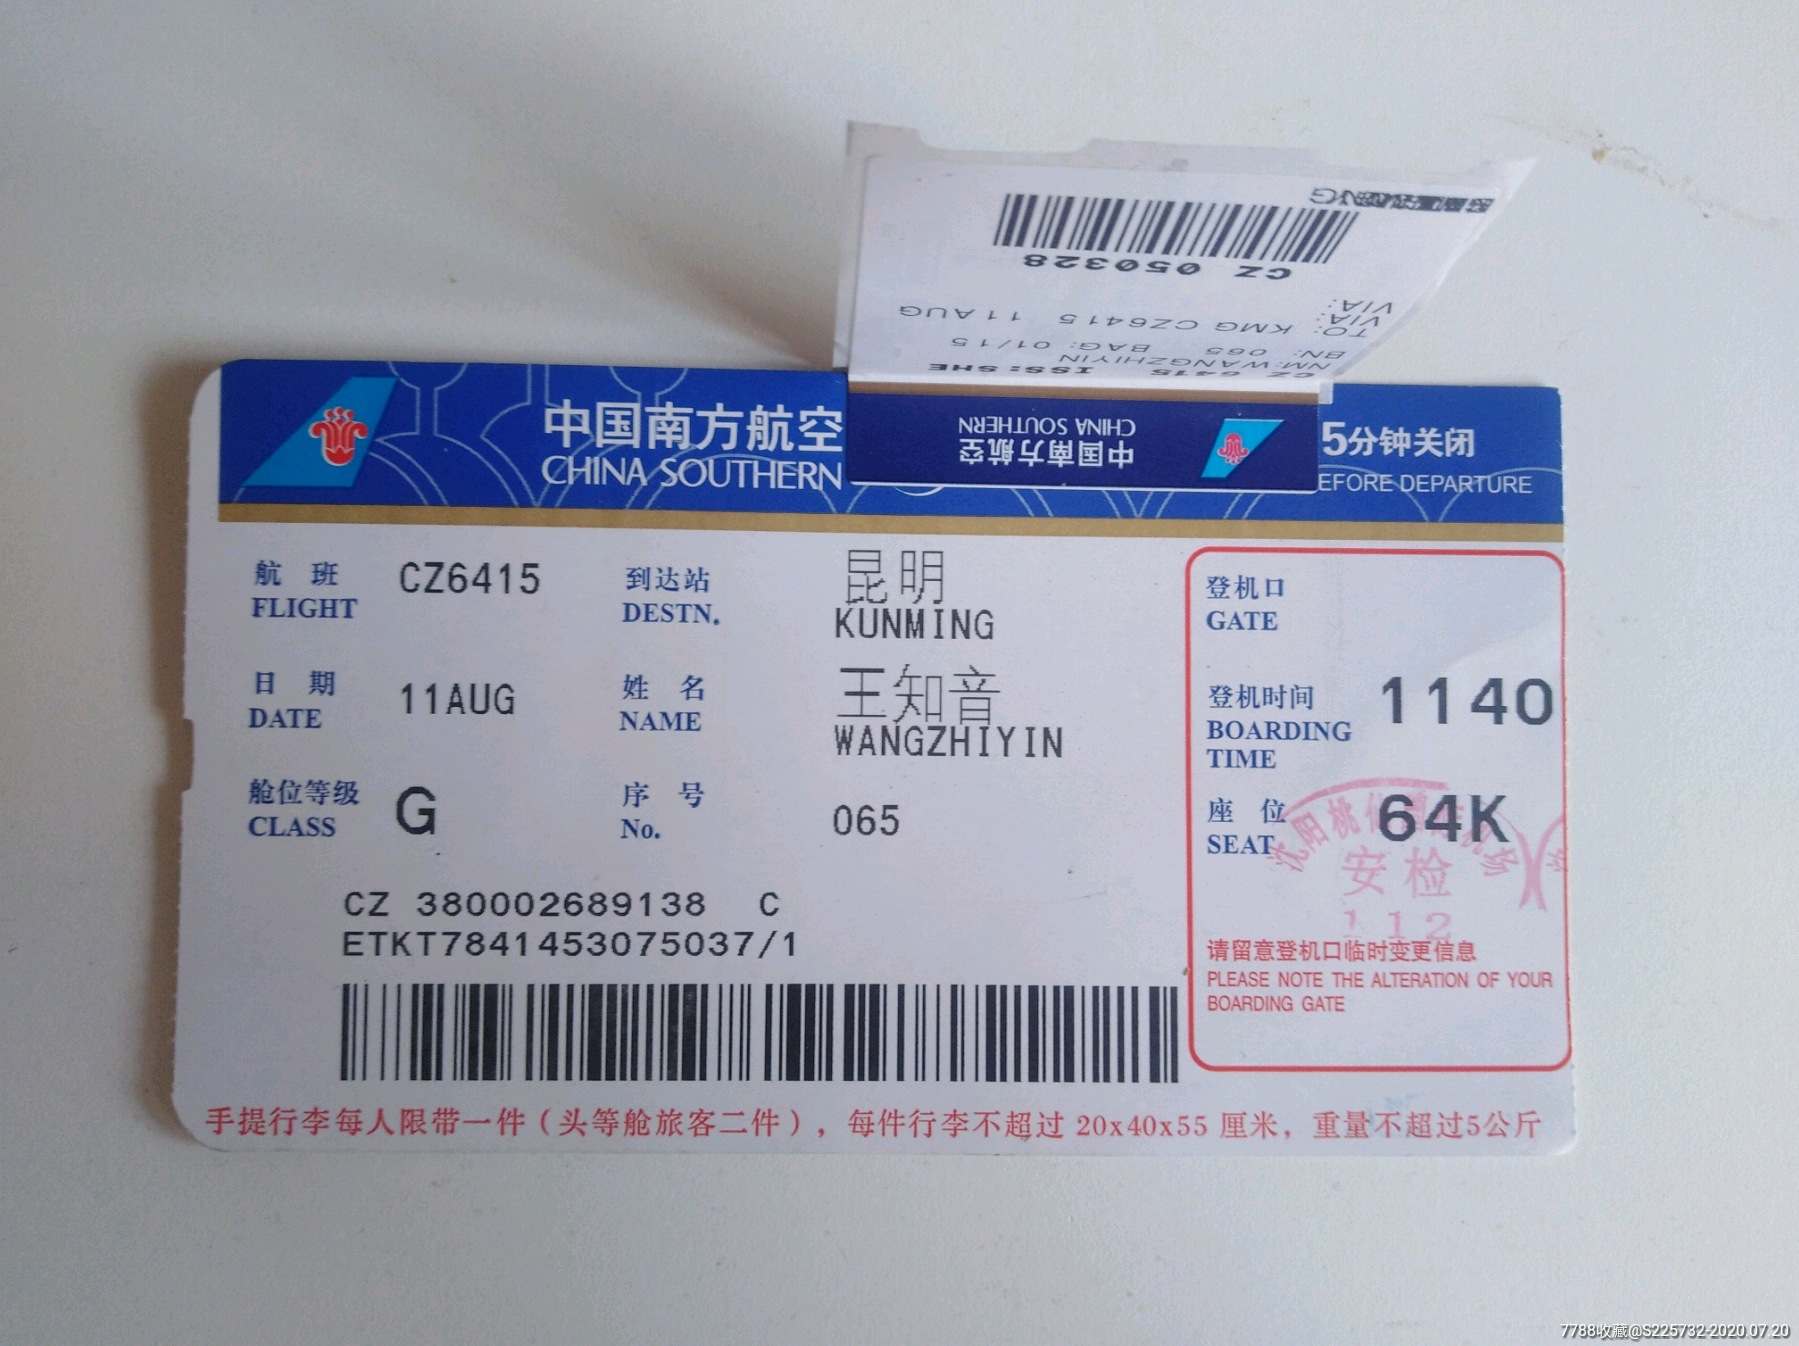 登机牌一中国南方航空